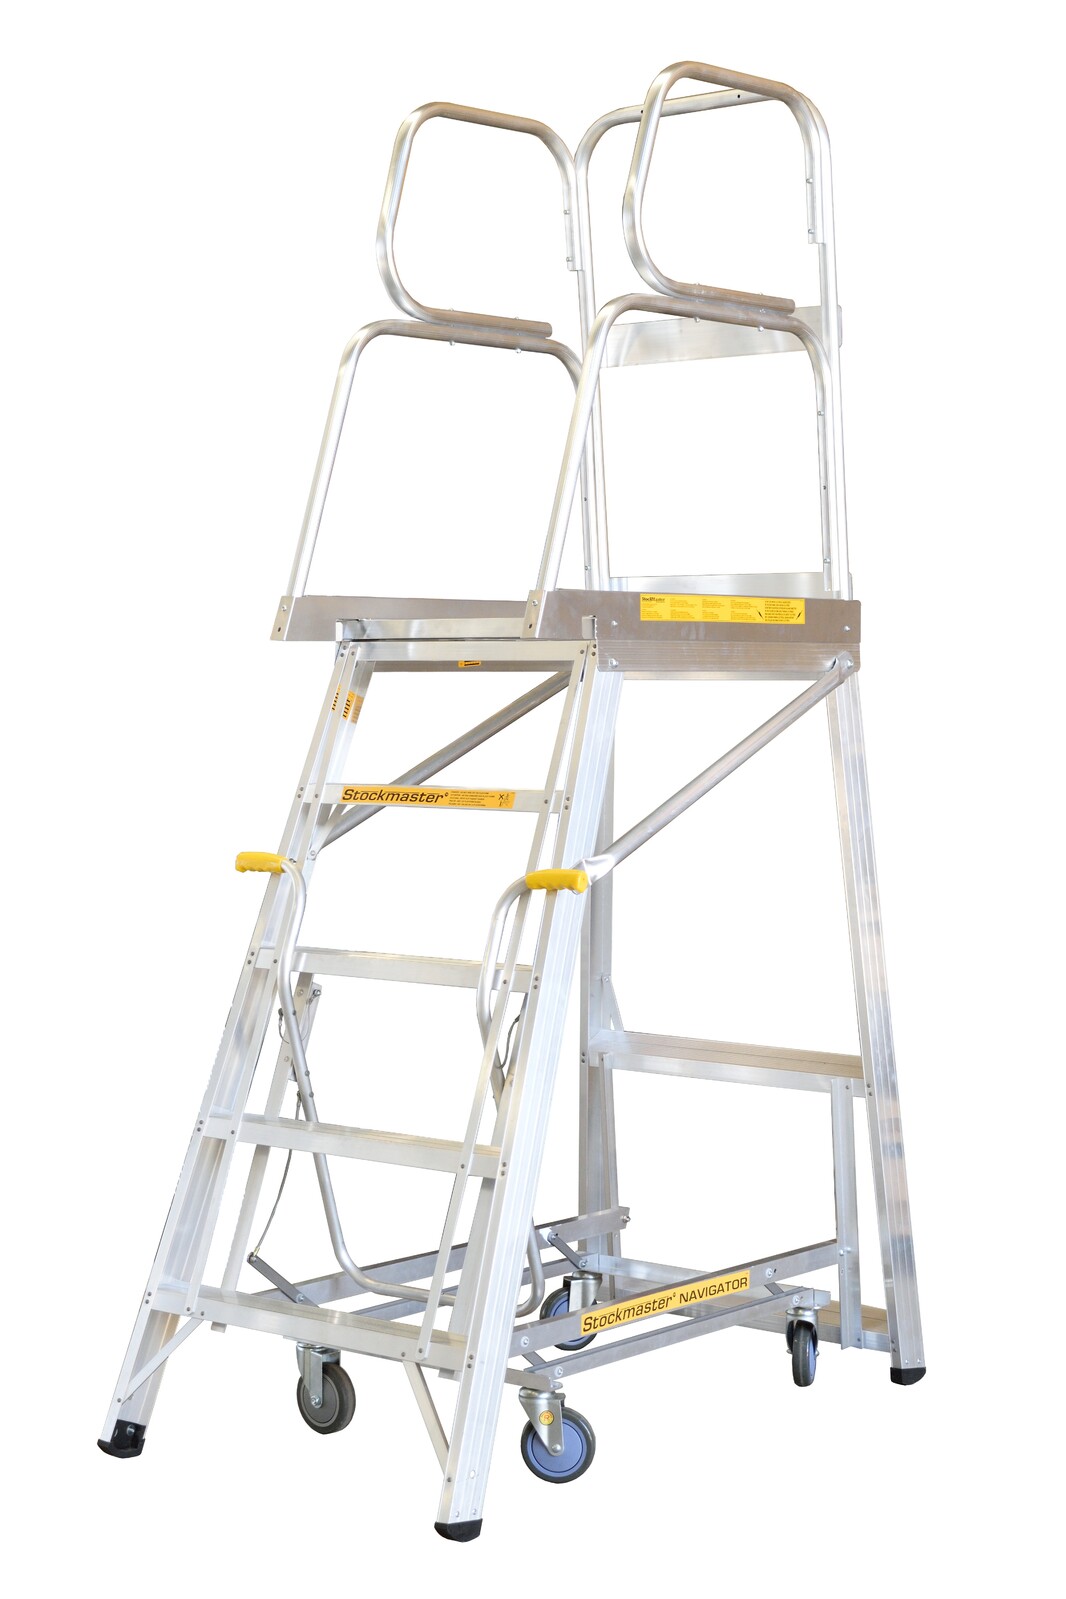 Stockmaster 150kg Rated Mobile Work Platform Ladder Navigator - 3.2m